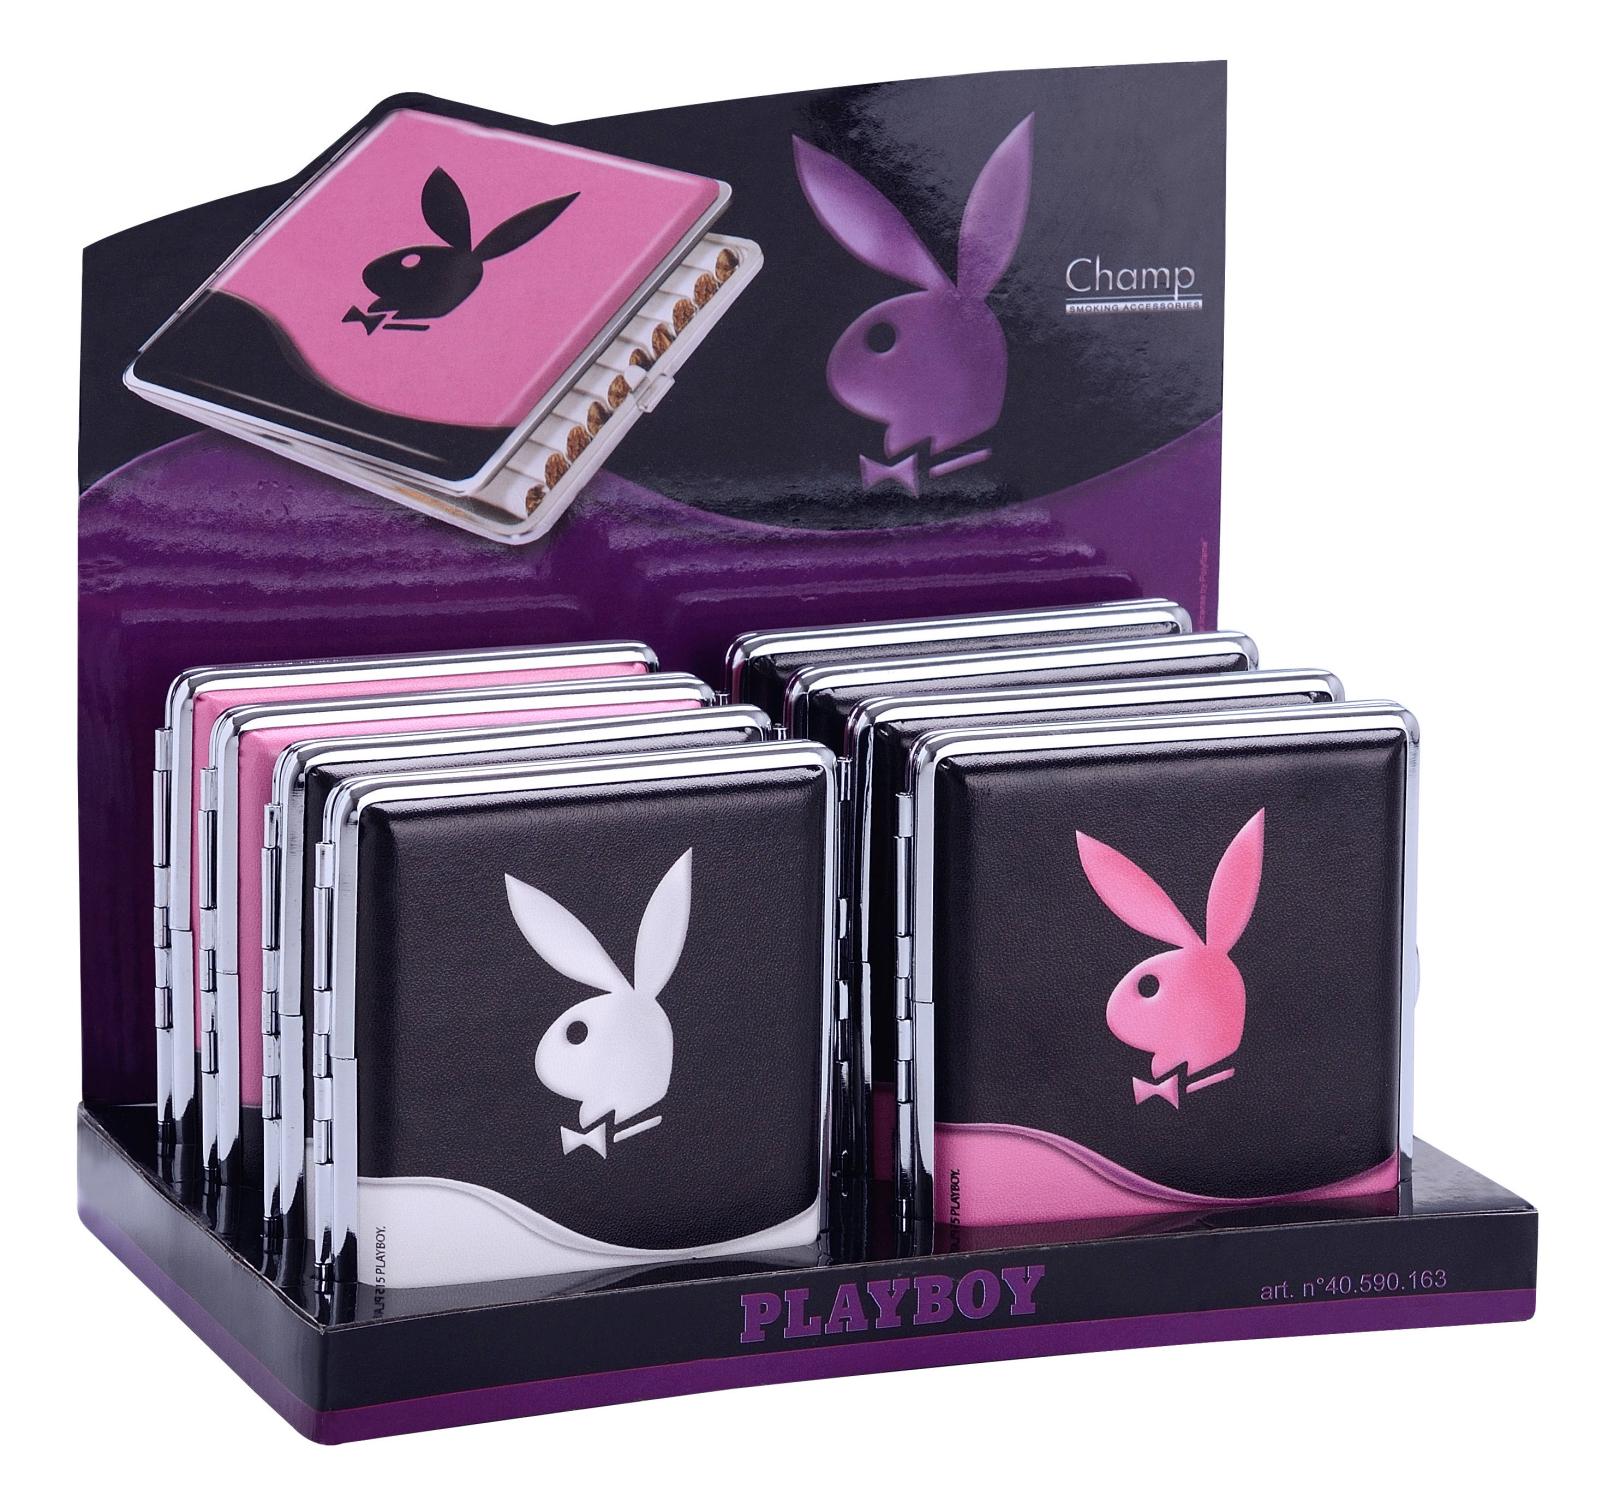 Zigaretten Etui Box Dose veredelt mit Playboy Motive zum Aktionspreis Serie 039 